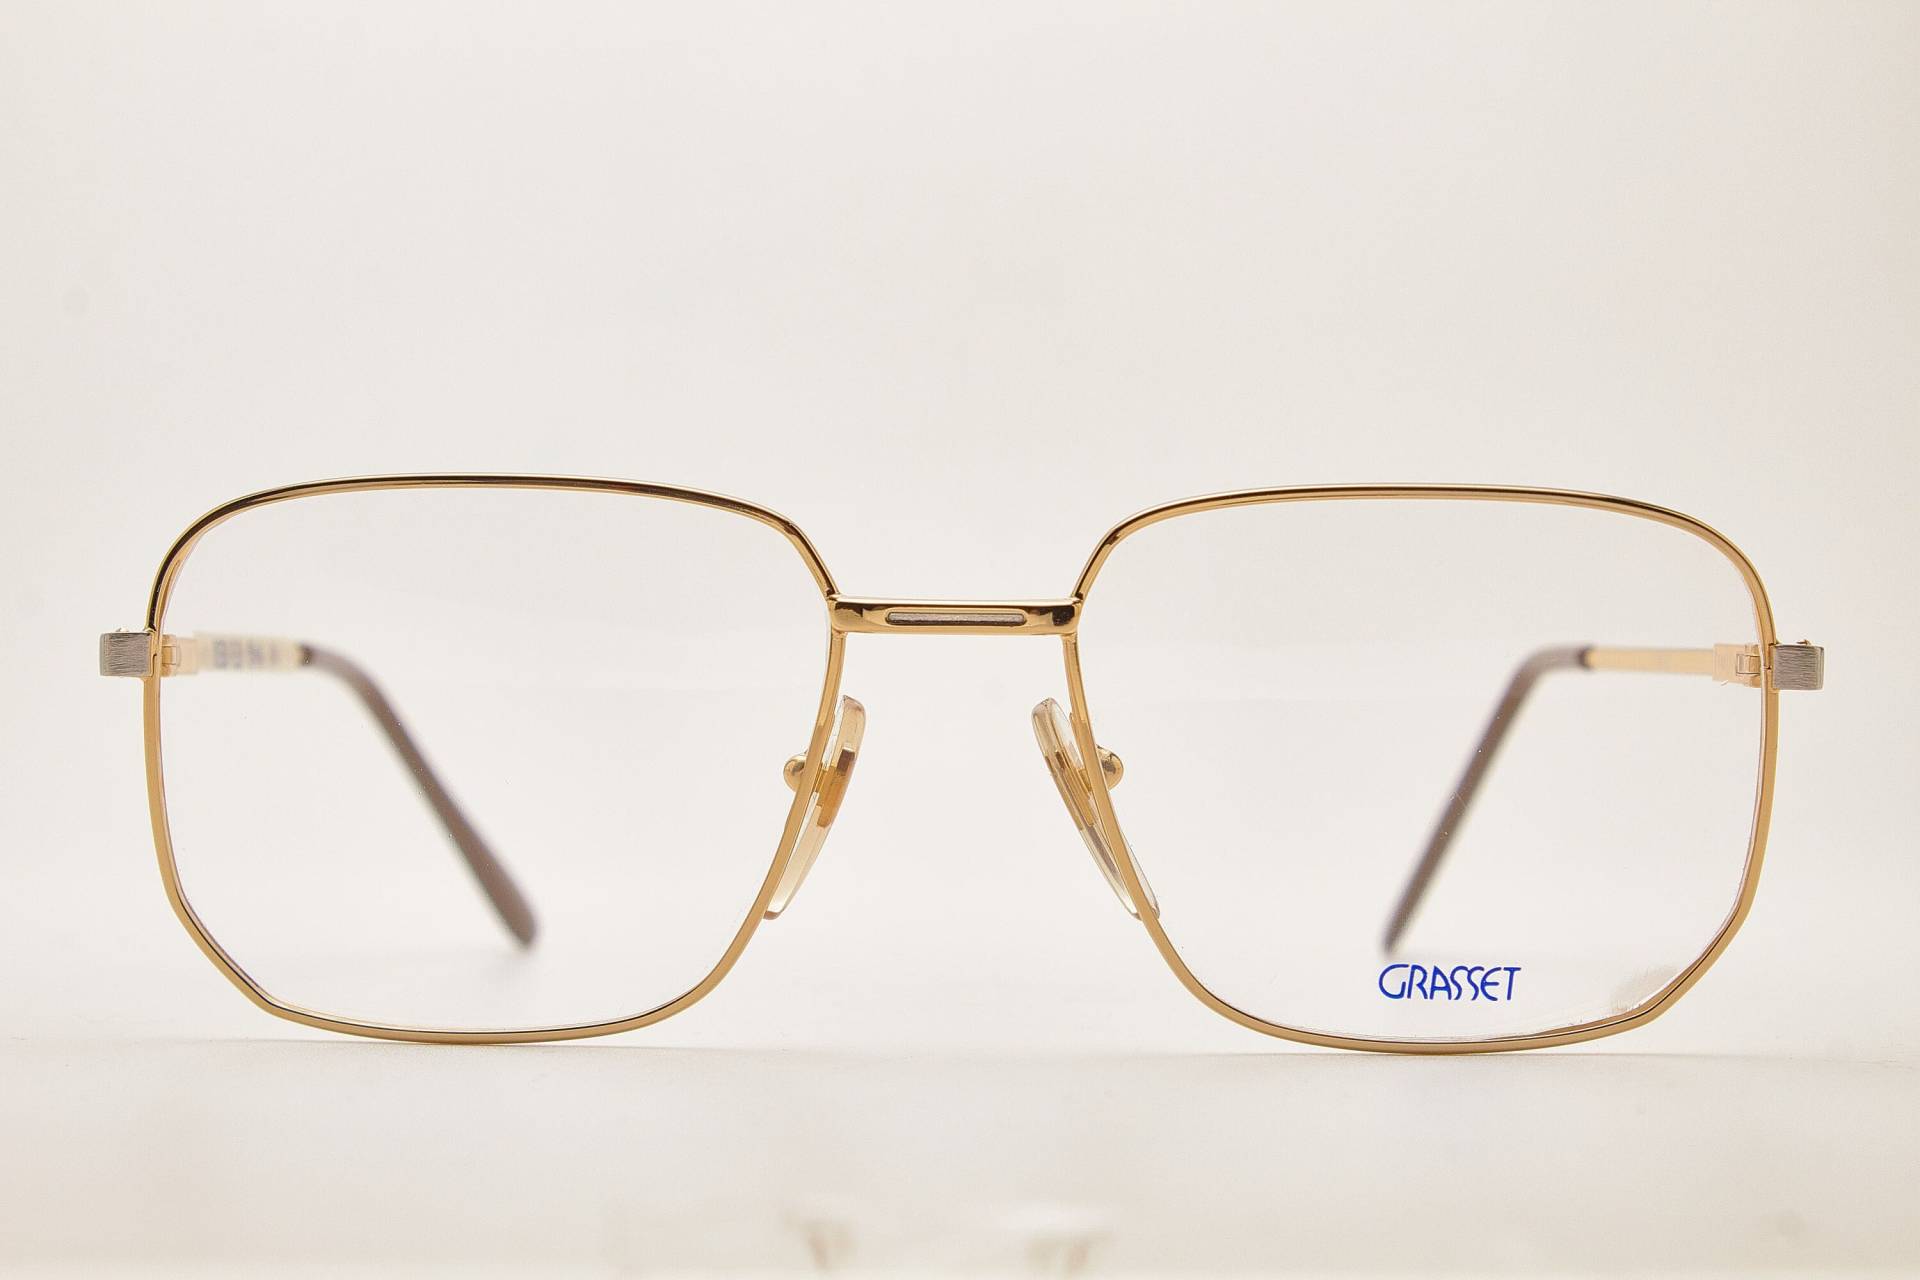 Grasset Vintage Brille G-Metall Rahmen Gold, Oversize 1980Er Jahre Pilotenbrille, Für Piloten 80Er Brillengestell von VintageGlassesVault